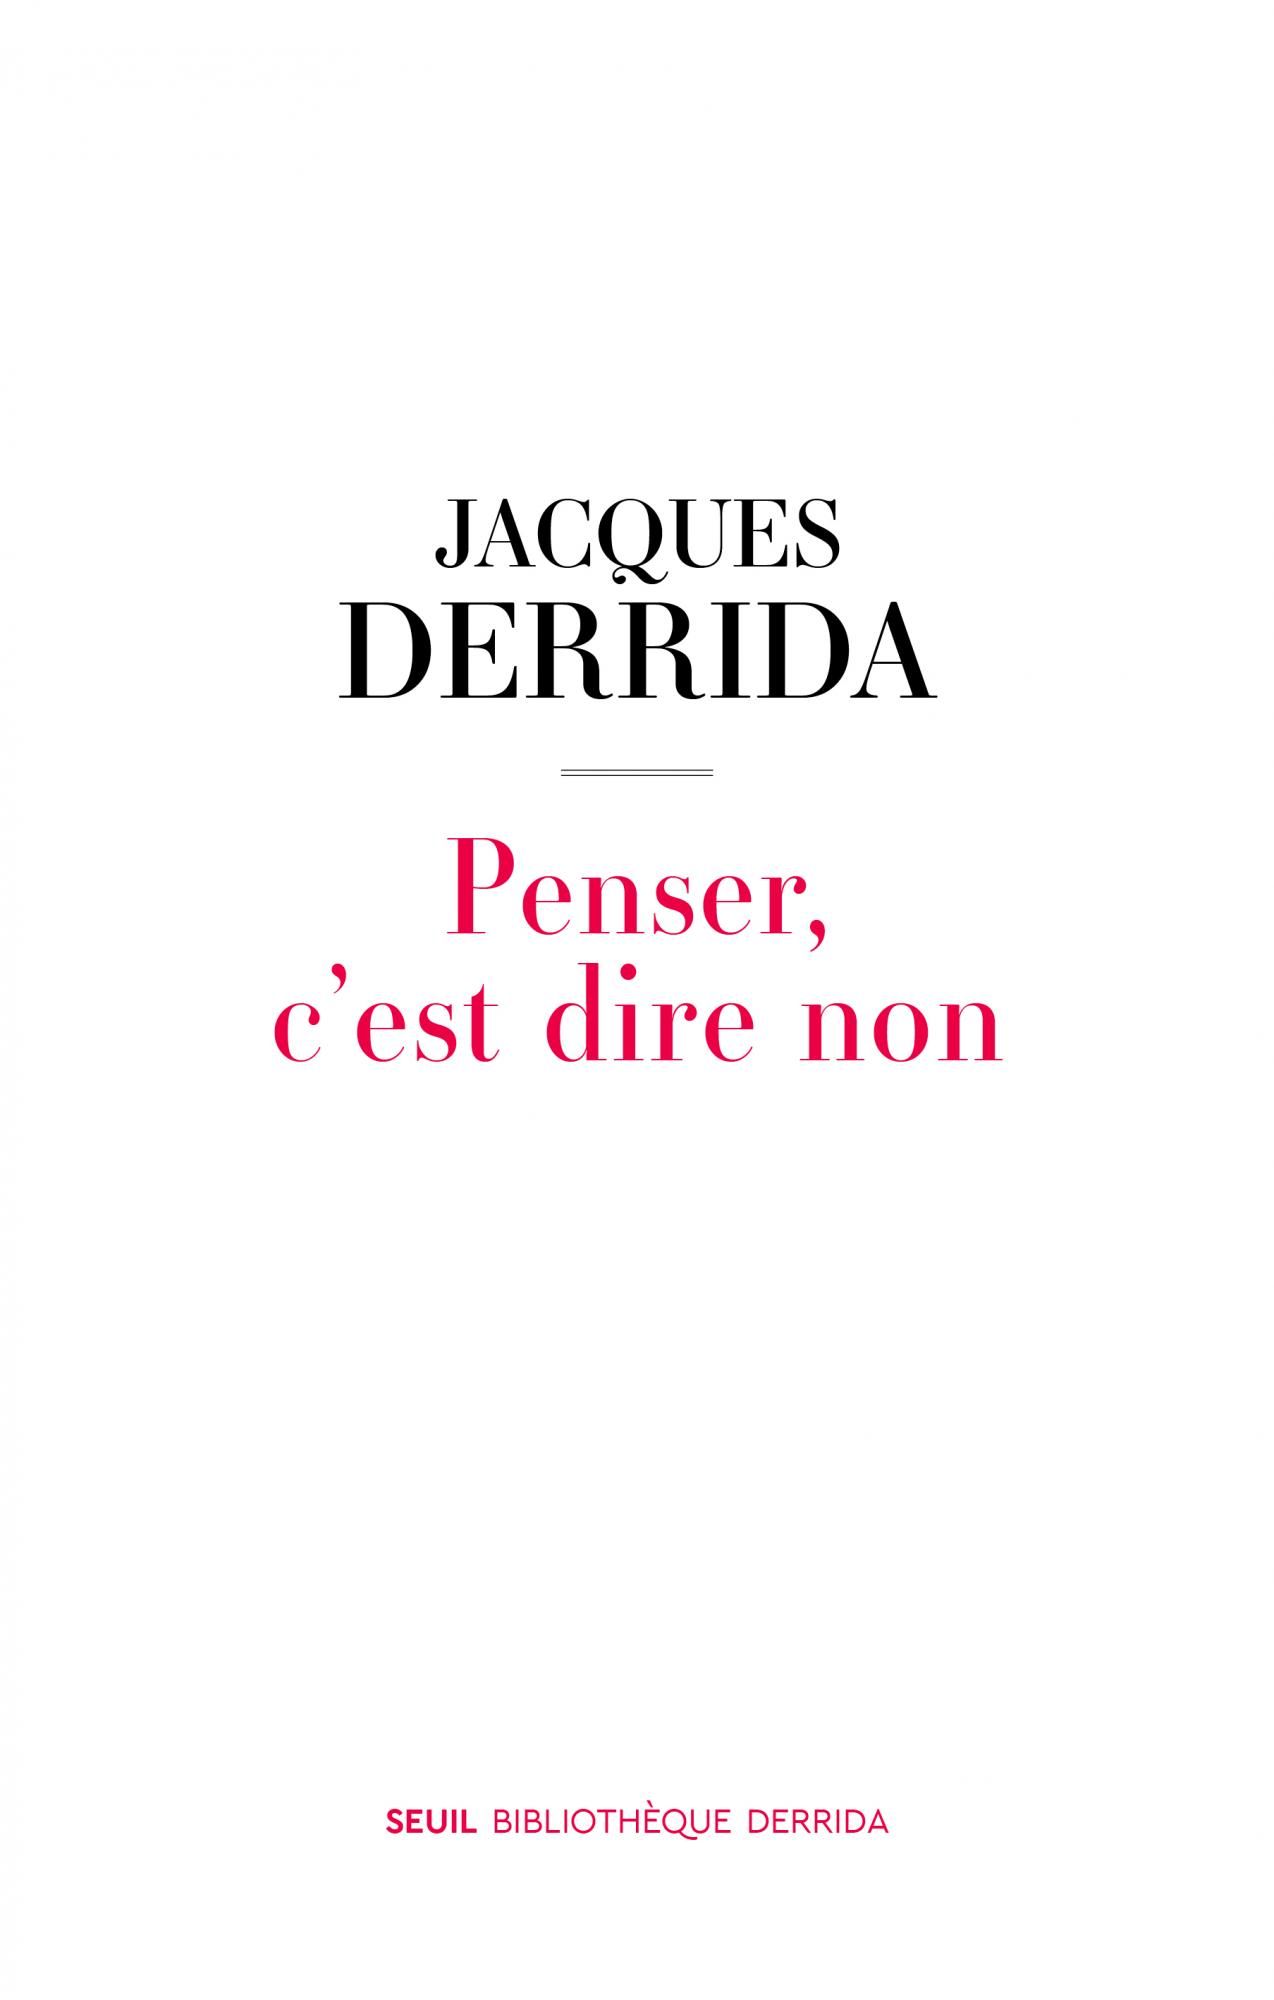 Jacques Derrida, Penser, c'est dire non